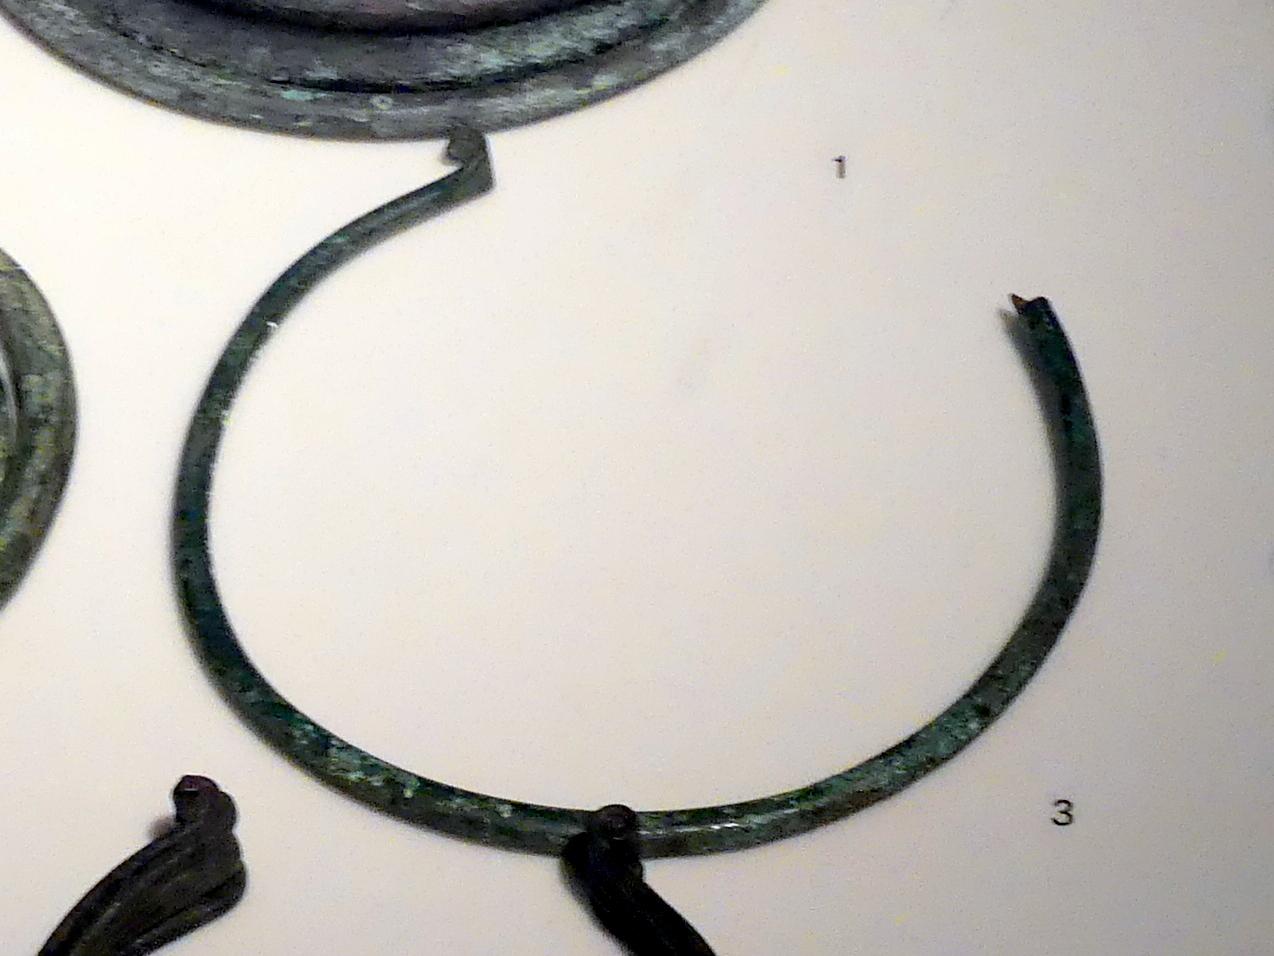 Halsringbarren, Frühe Bronzezeit, 3365 - 1200 v. Chr., 2200 - 1700 v. Chr.